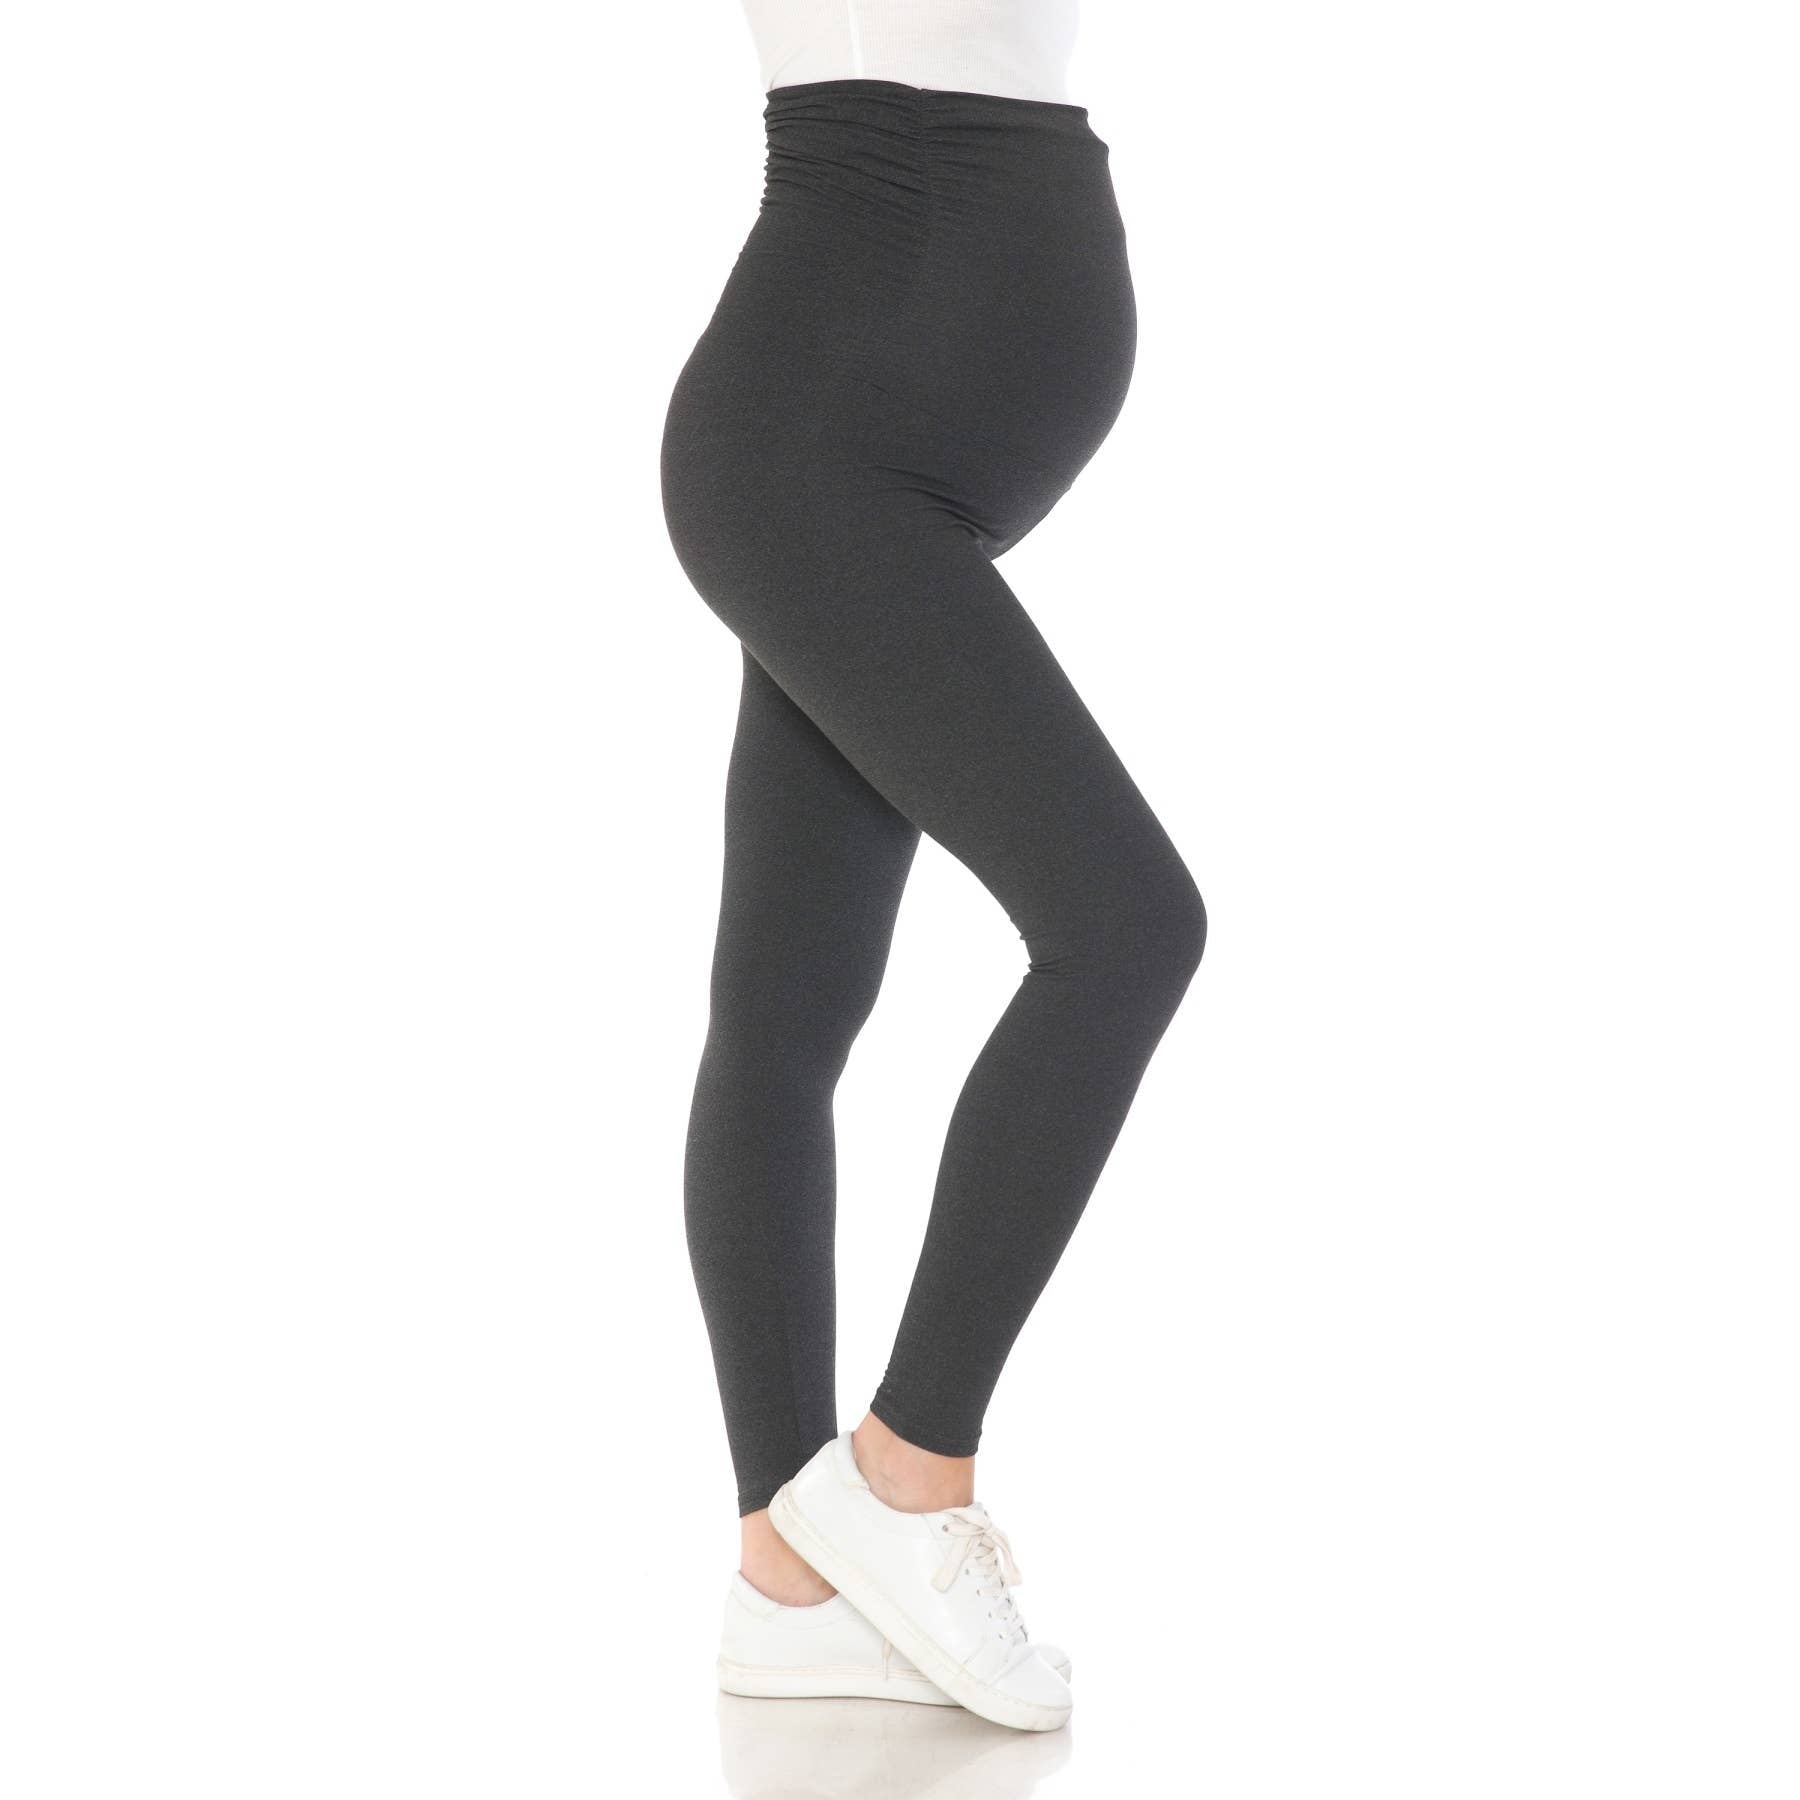 Sonoma Goods for Life Black Gray Leggings Size M (Maternity) - 36% off